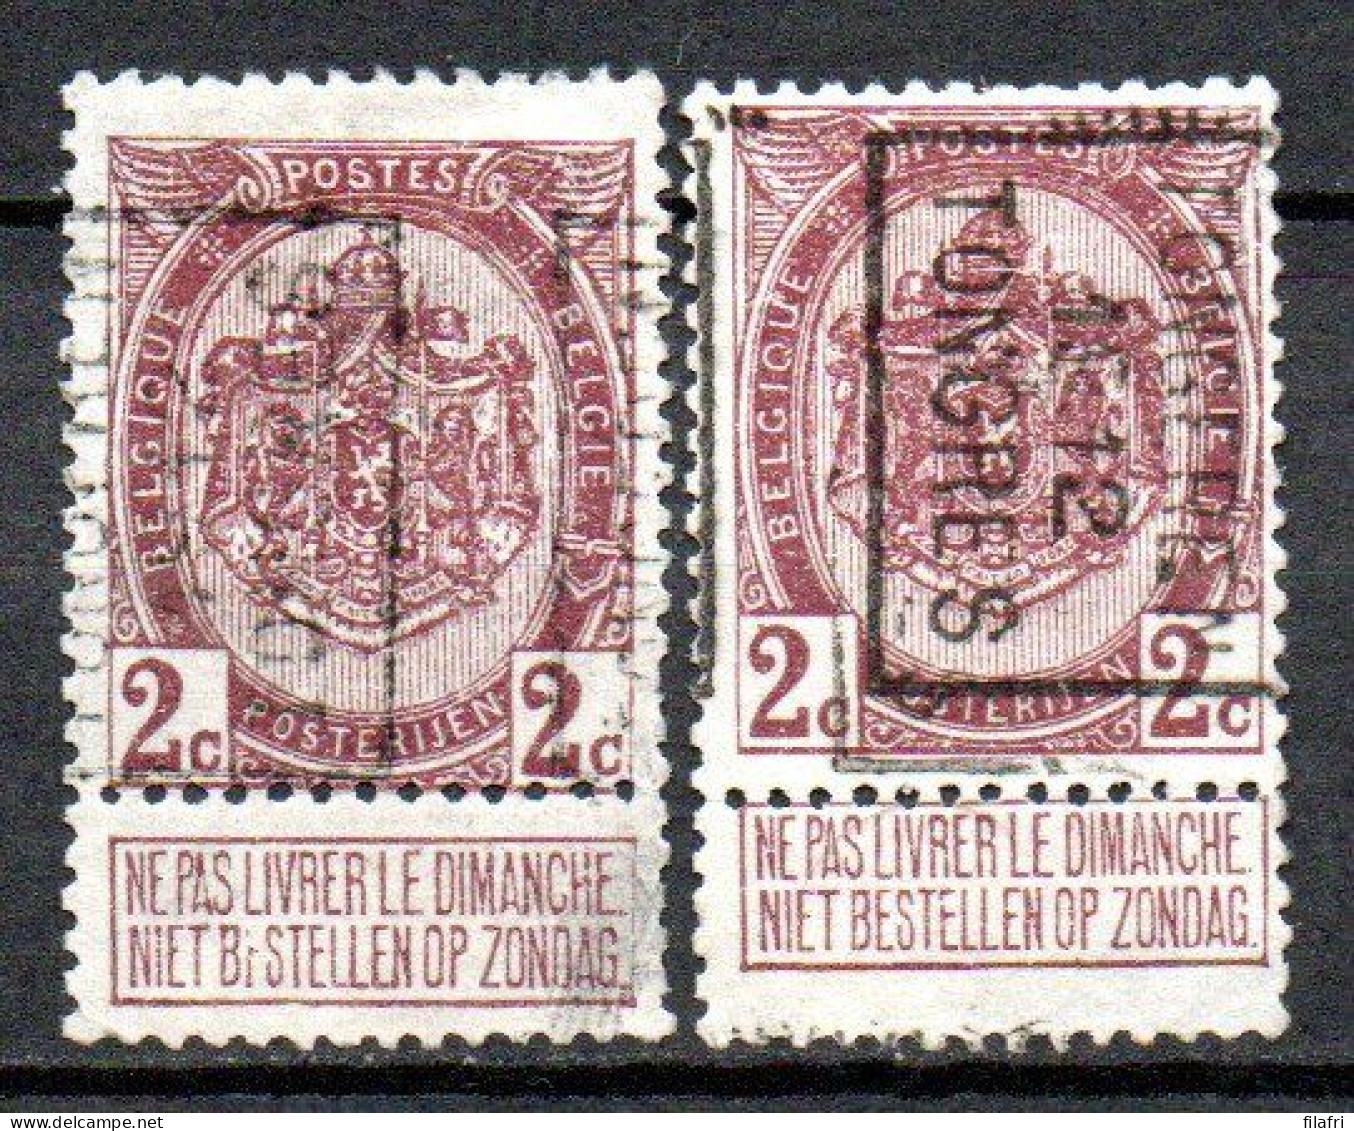 1968 Voorafstempeling Op Nr 82 - TONGEREN 1912 TONGRES - Positie A & B - Rollenmarken 1910-19